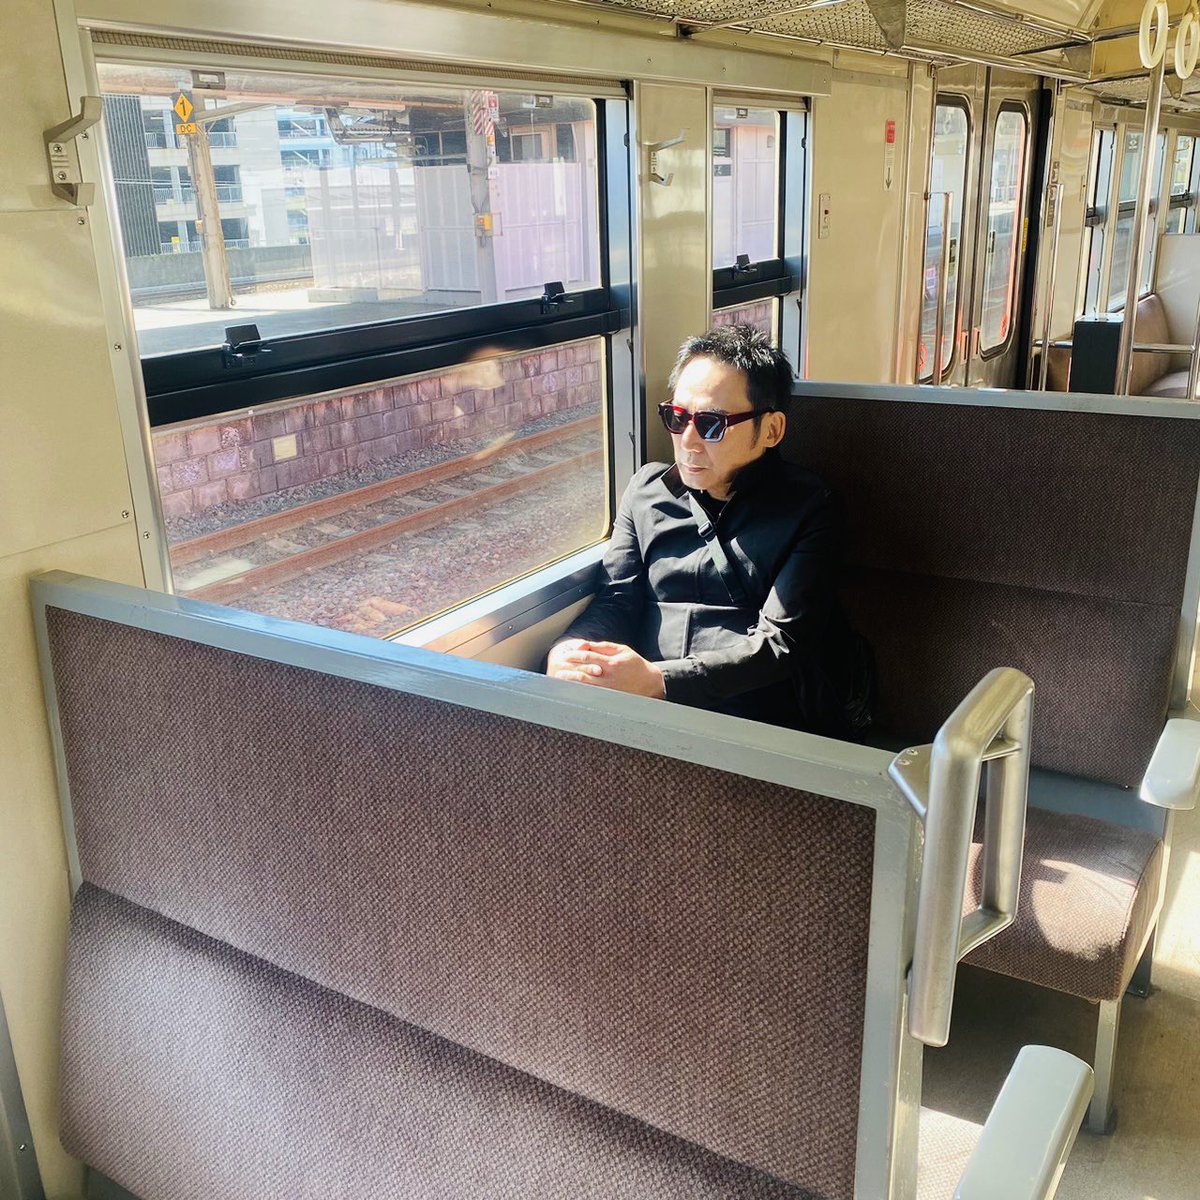 ノスタルジックな 列車の旅 春の☘️車窓を楽しむ https://t.co/pzaLDGaEEz